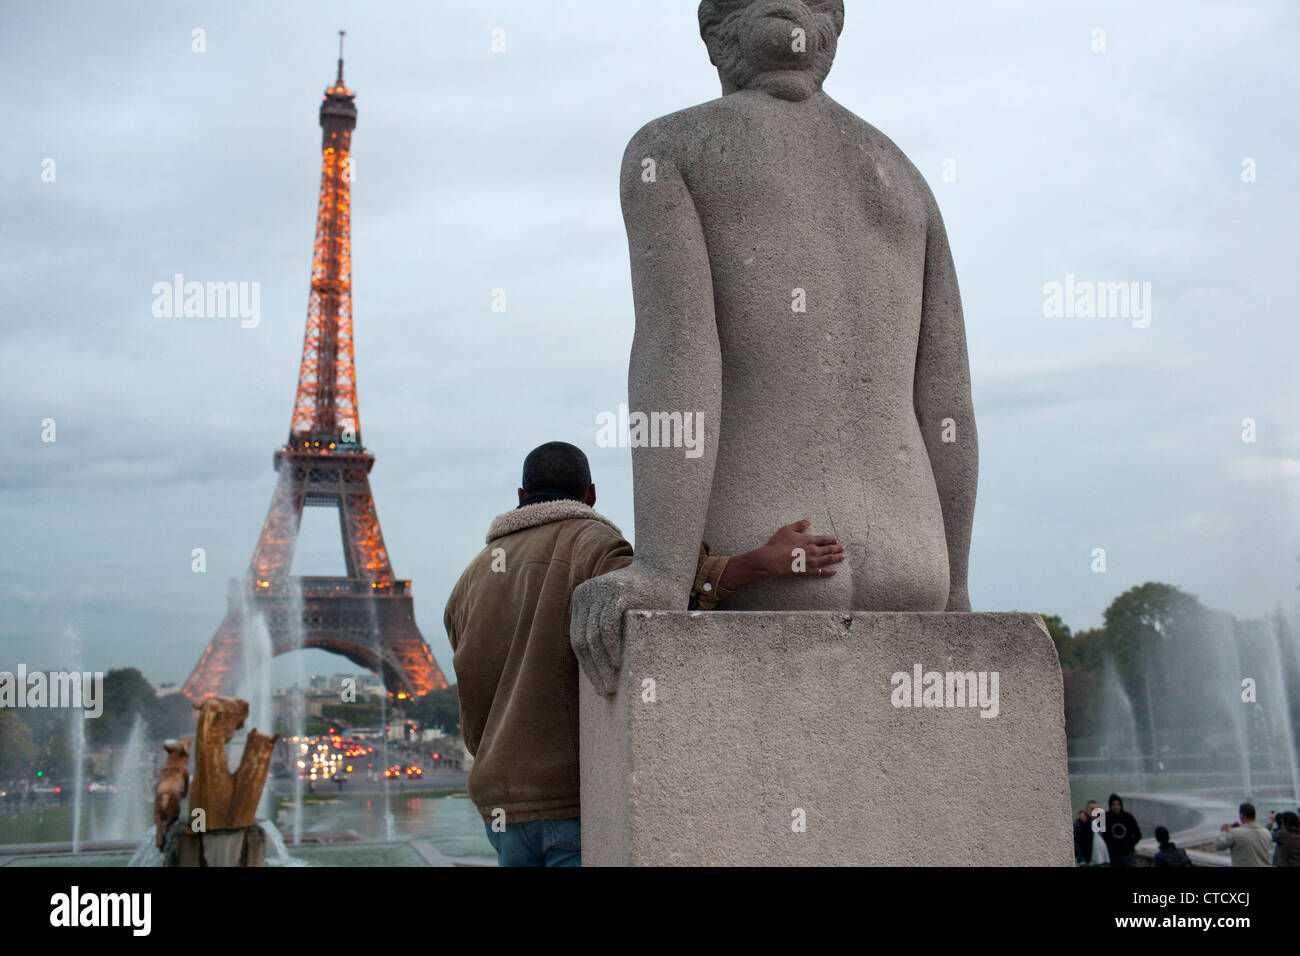 Une scène d'humour quand un homme pose pour une photo avec une statue au Trocadéro près de la Tour Eiffel à Paris, France. Banque D'Images